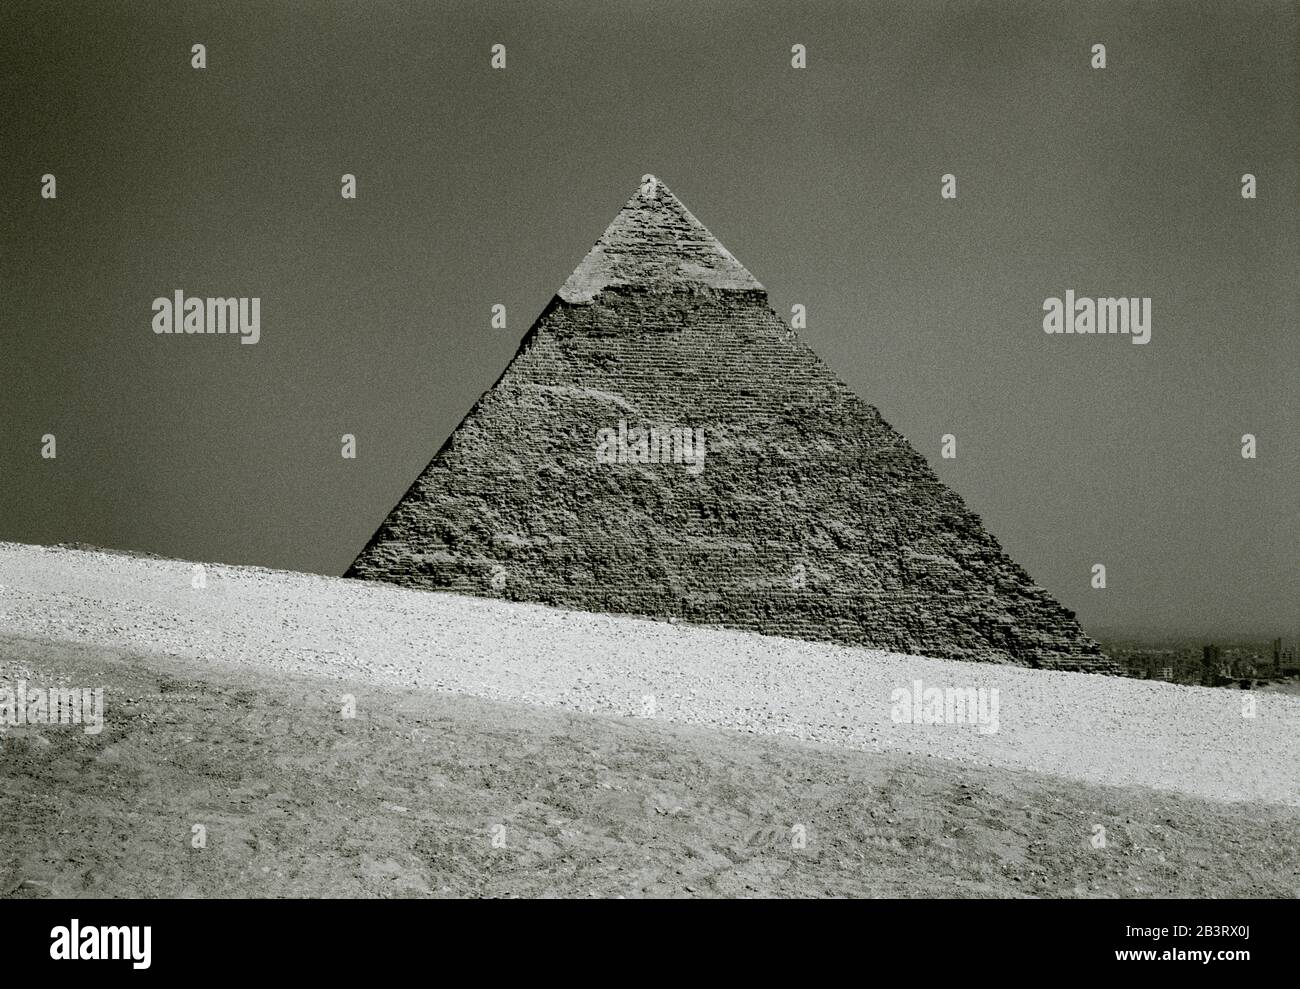 Reise-Fotografie - Pyramide von Khafre an den Pyramiden von Gizeh in Kairo in Ägypten in Nordafrika Mittlerer Osten - Alte Geschichte Stockfoto